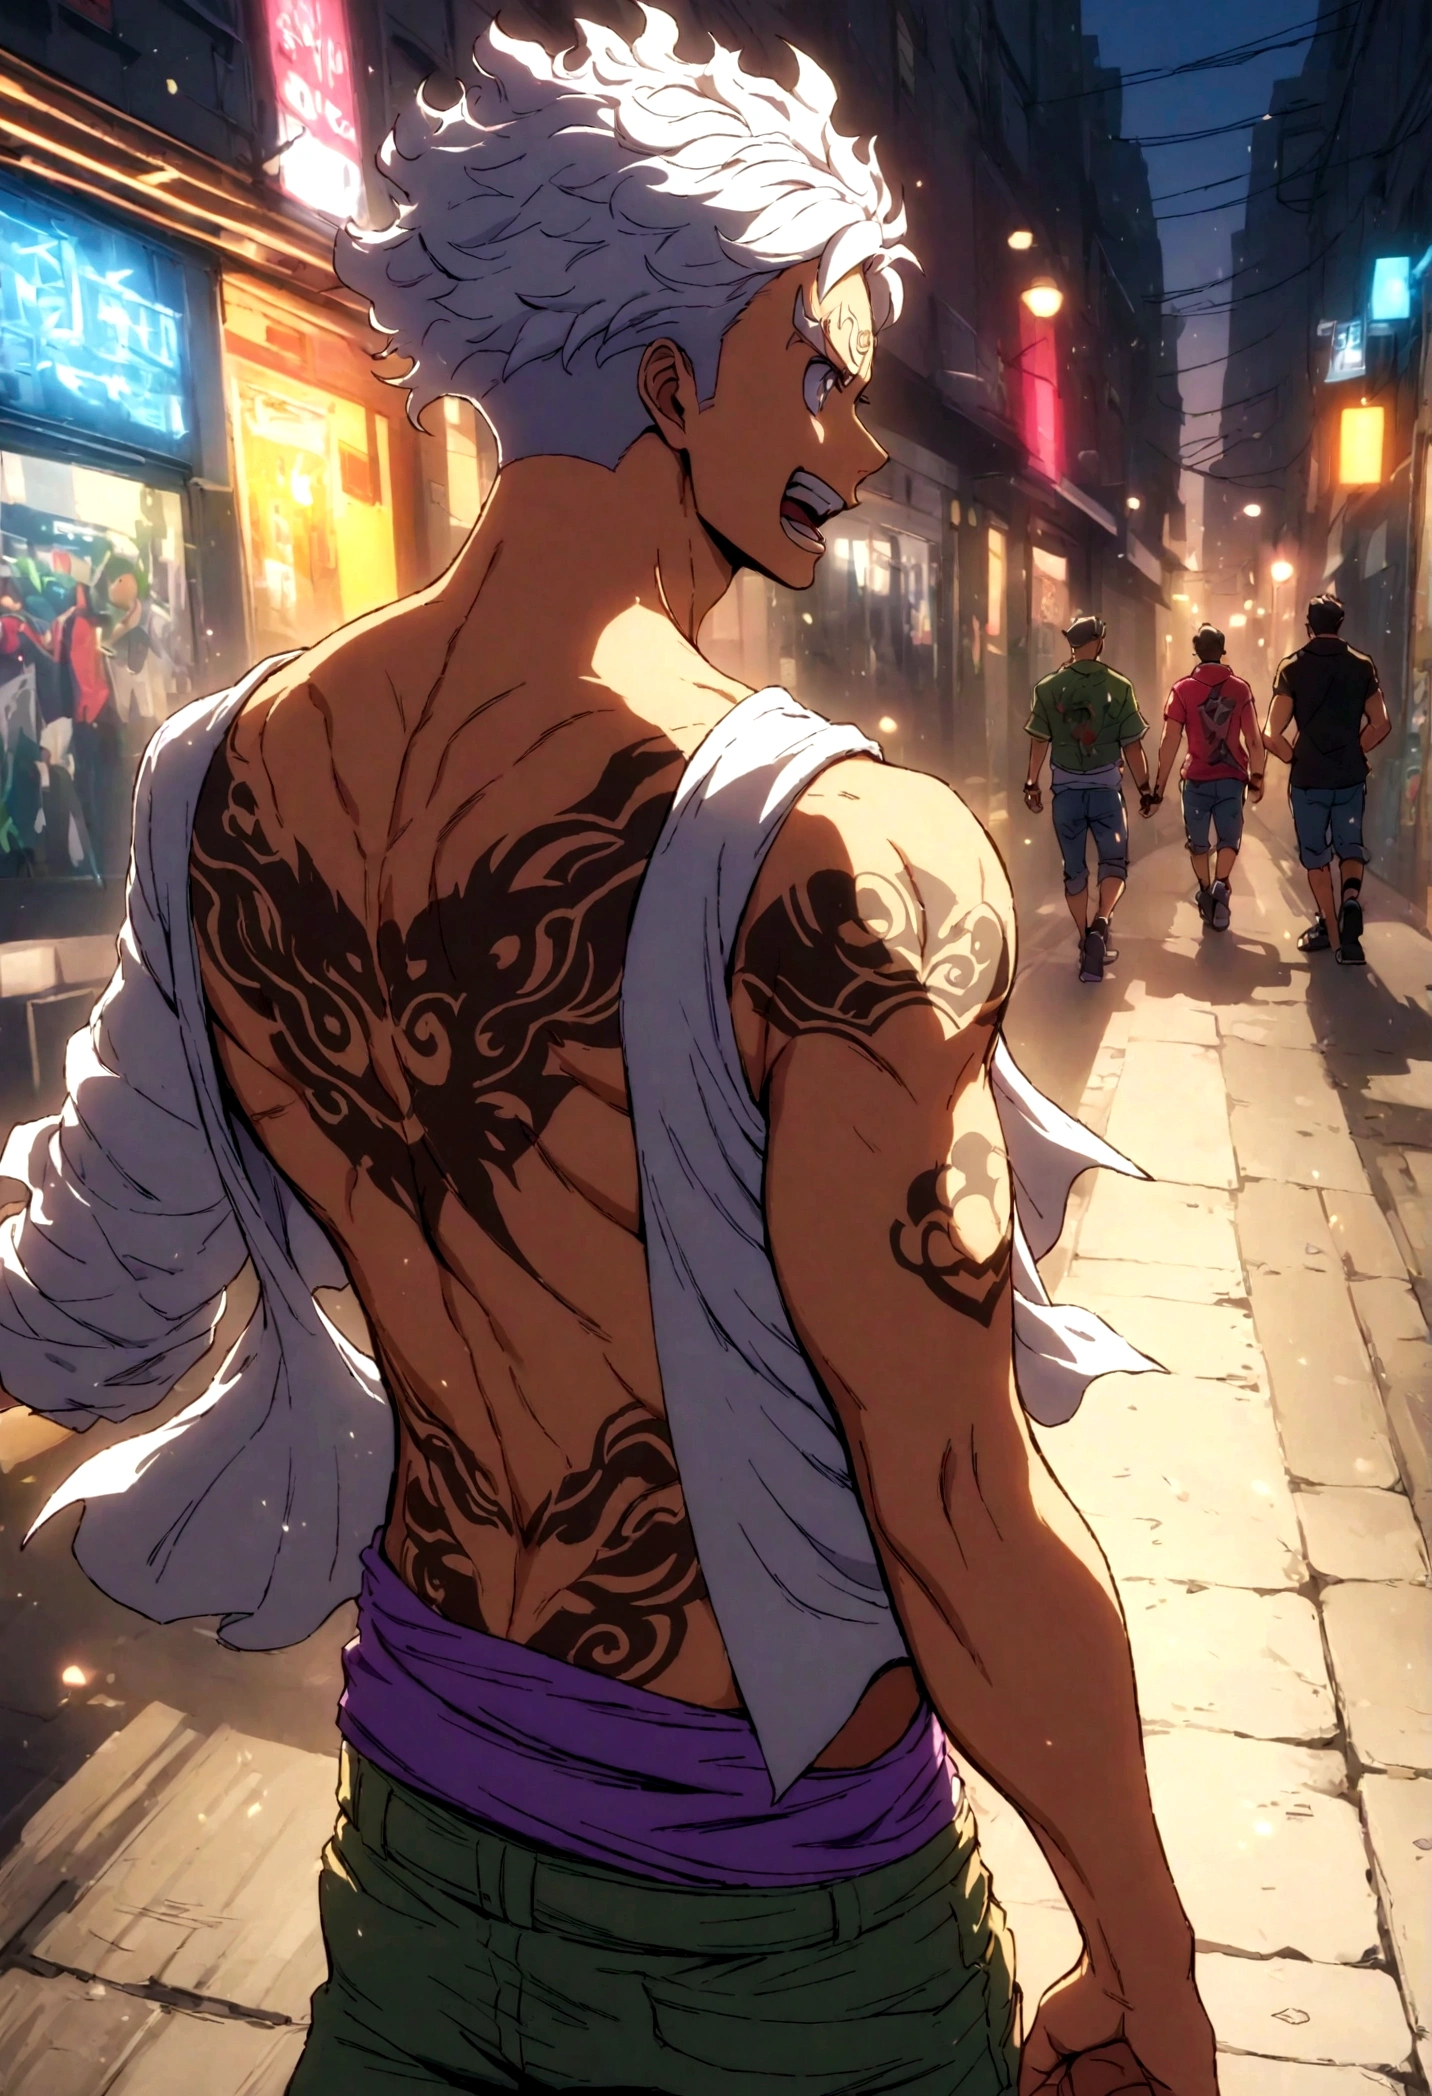 Chico fuerte y musculoso con tatuaje de Guan Yu en su tonificada espalda desnuda., estilo callejero, Detalles de alta resolución, Ambiente urbano, colores vibrantes, iluminación dramática